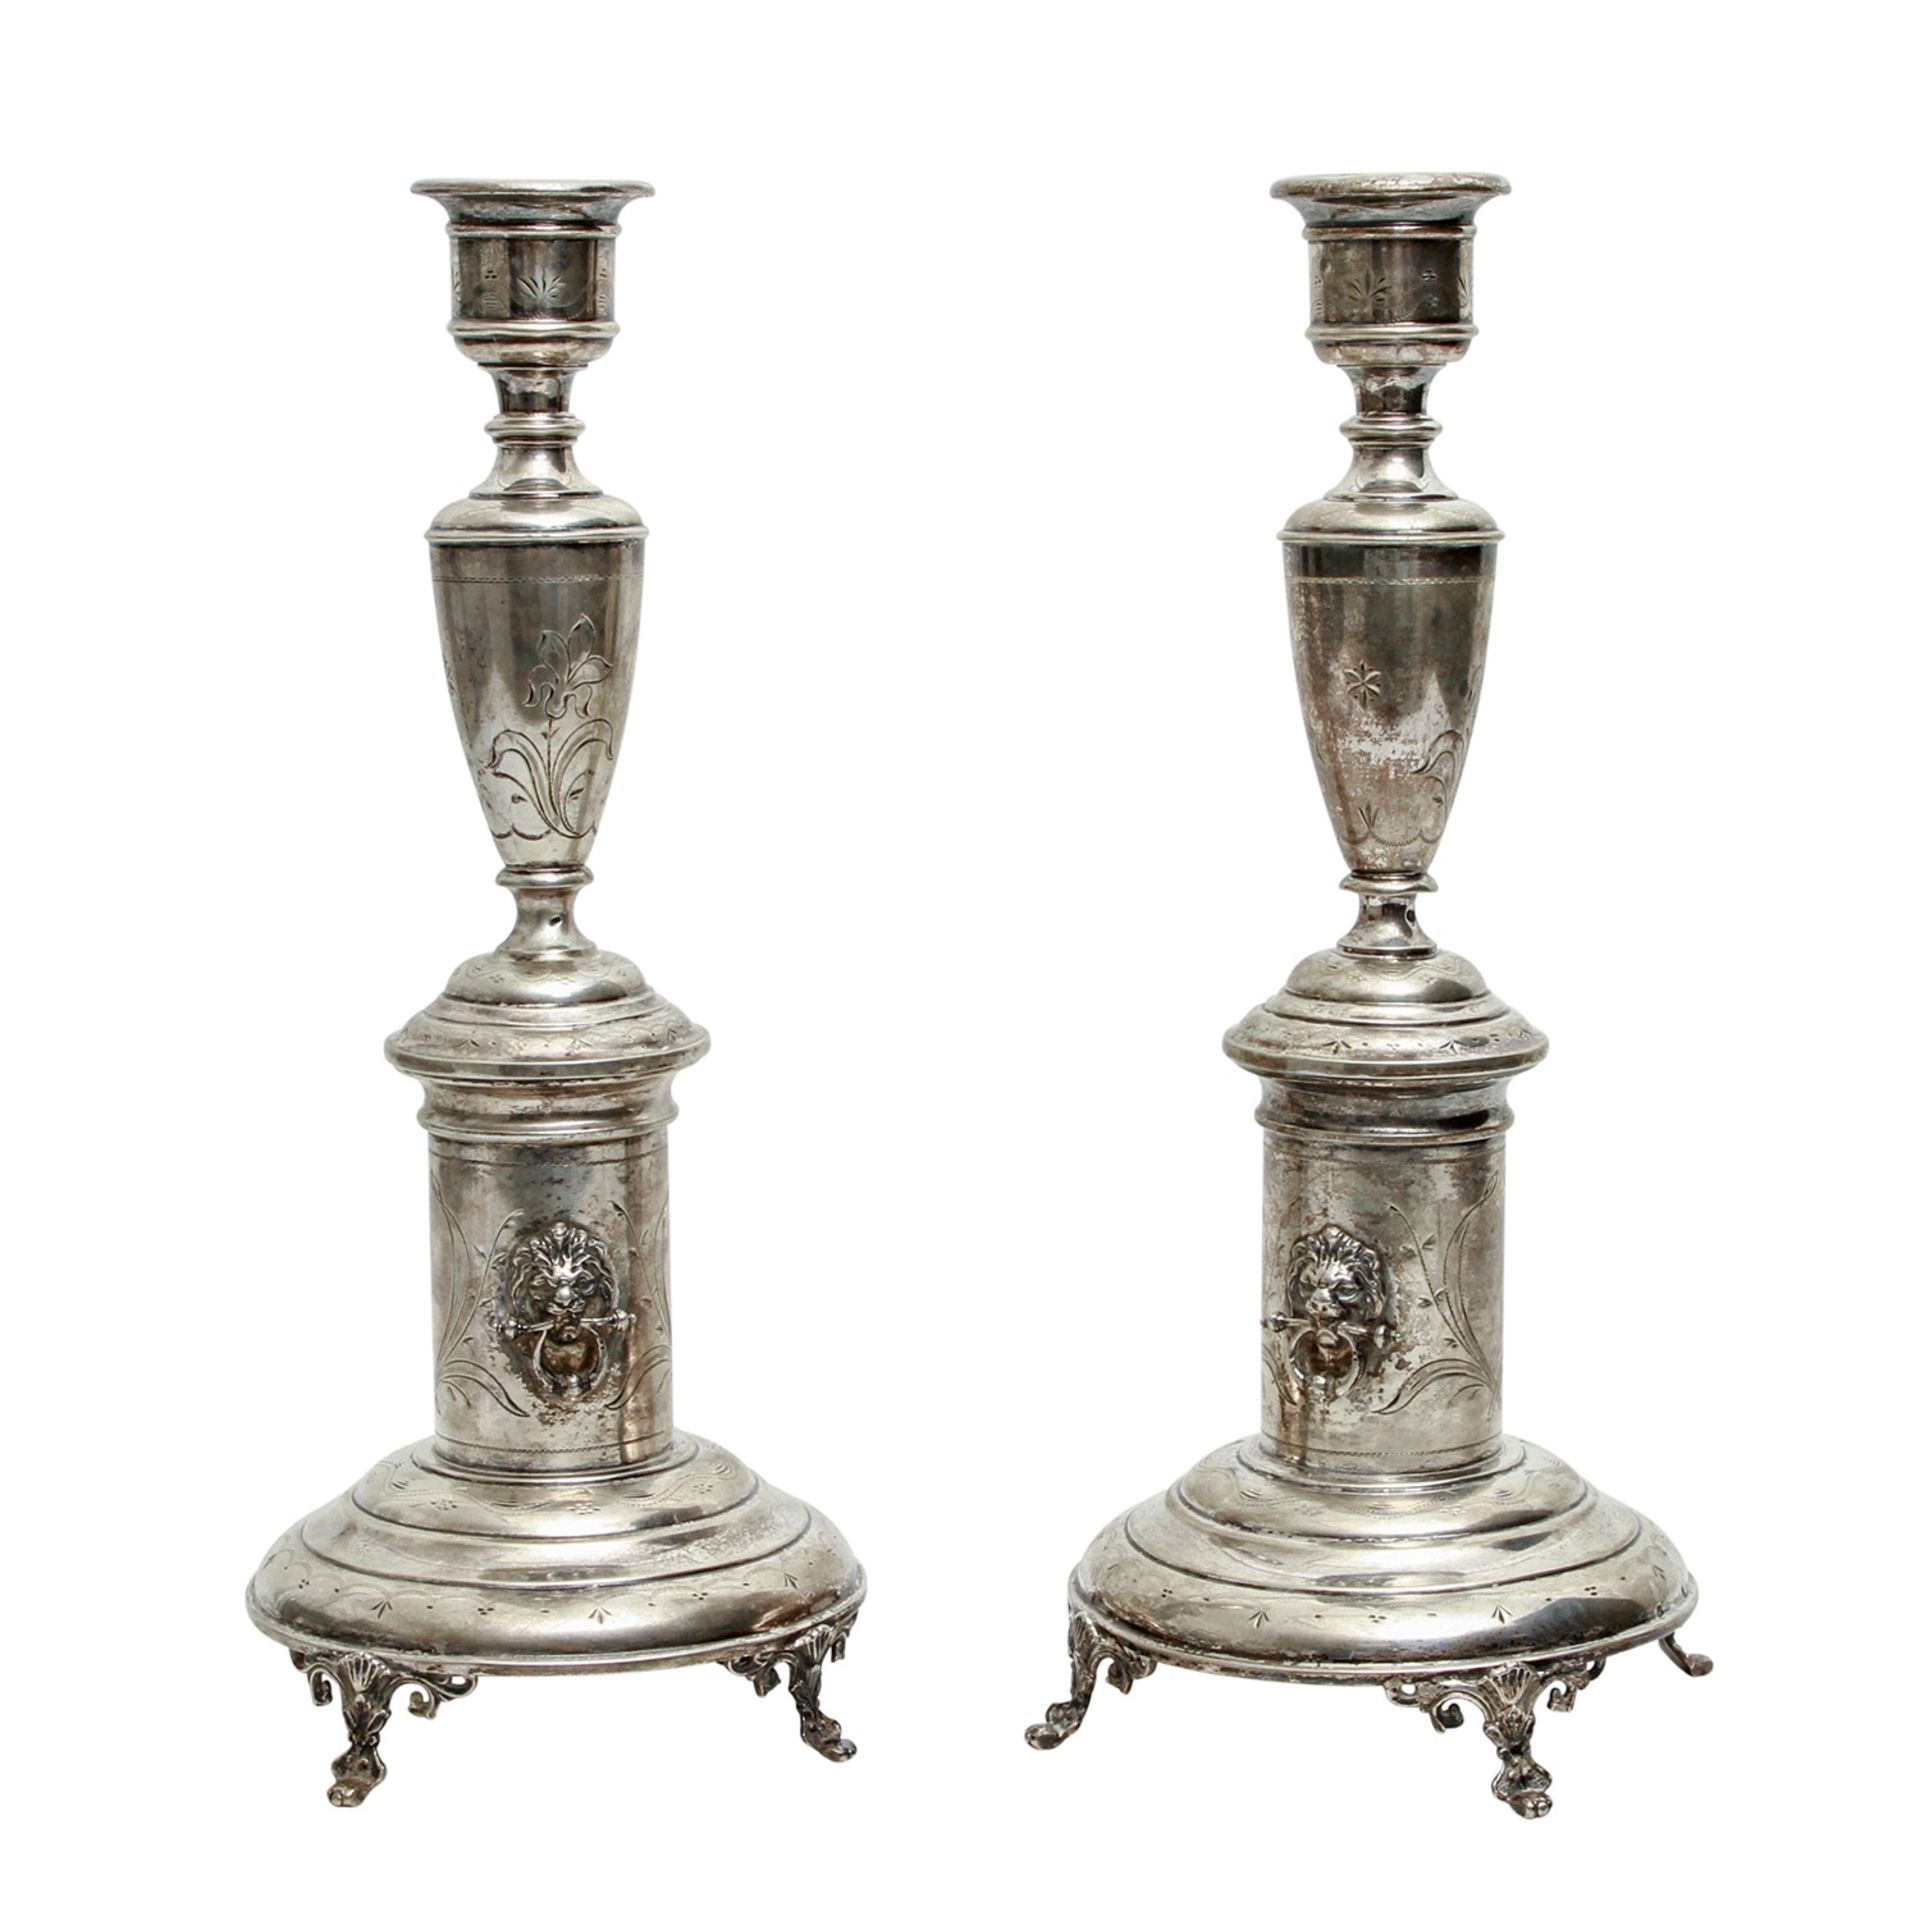 ÖSTERREICH-UNGARN Wien Paar 1-flammige Kerzenleuchter, 800 Silber, nach 1872.Runder profilierter